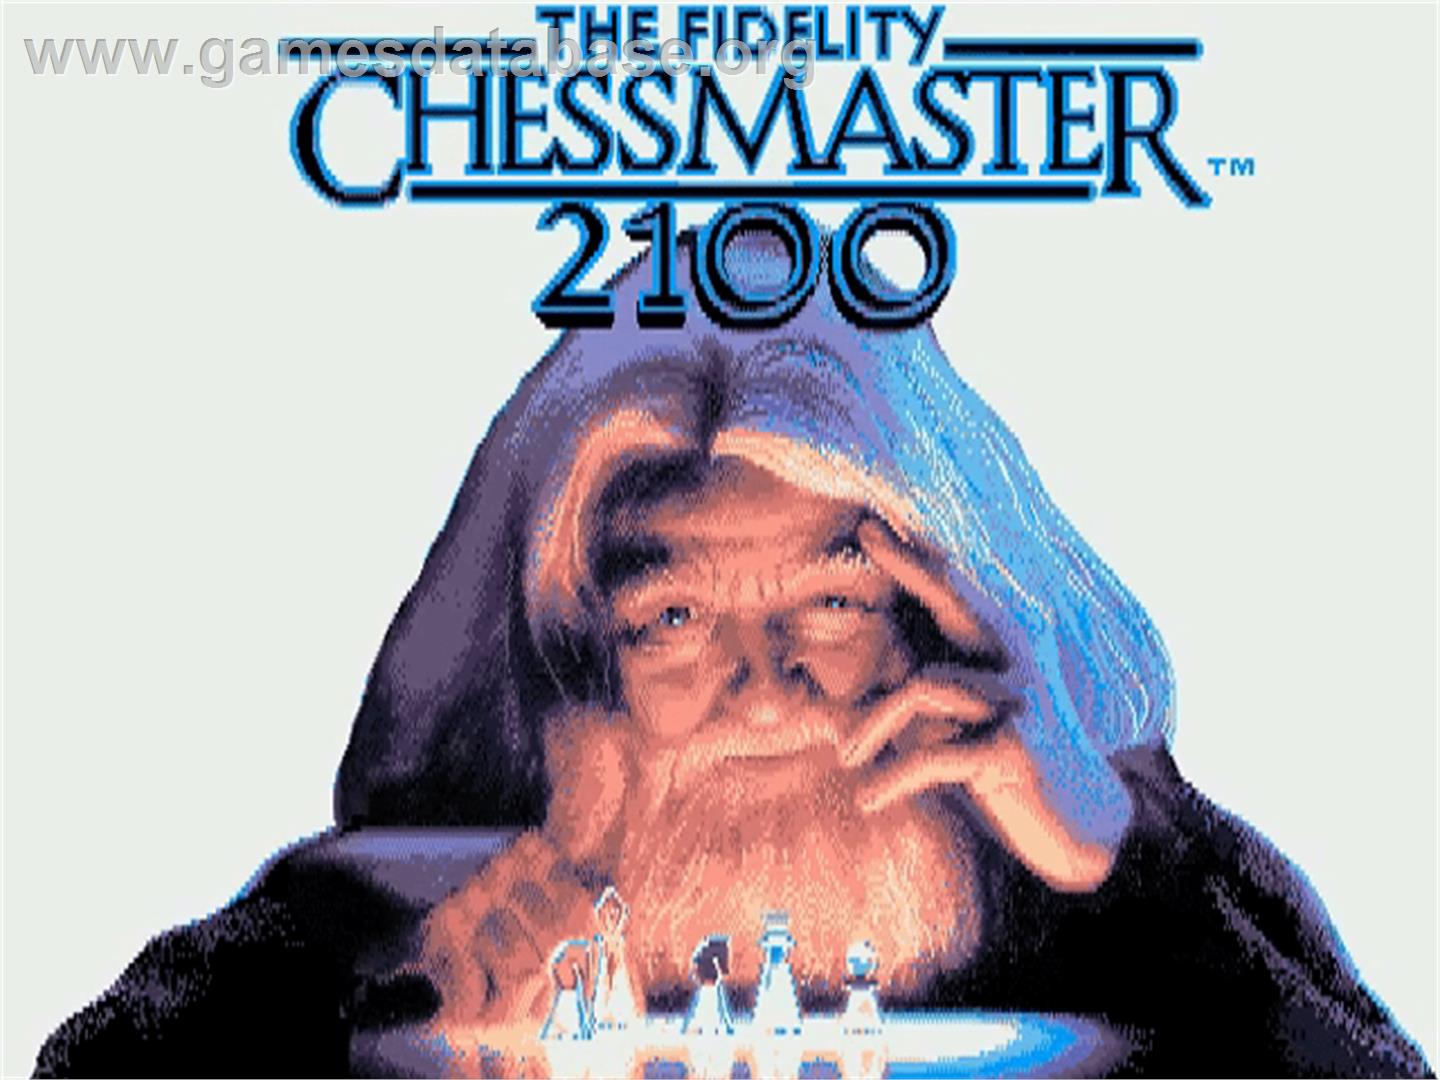 Fidelity Chessmaster 2100 - Commodore Amiga - Artwork - Title Screen